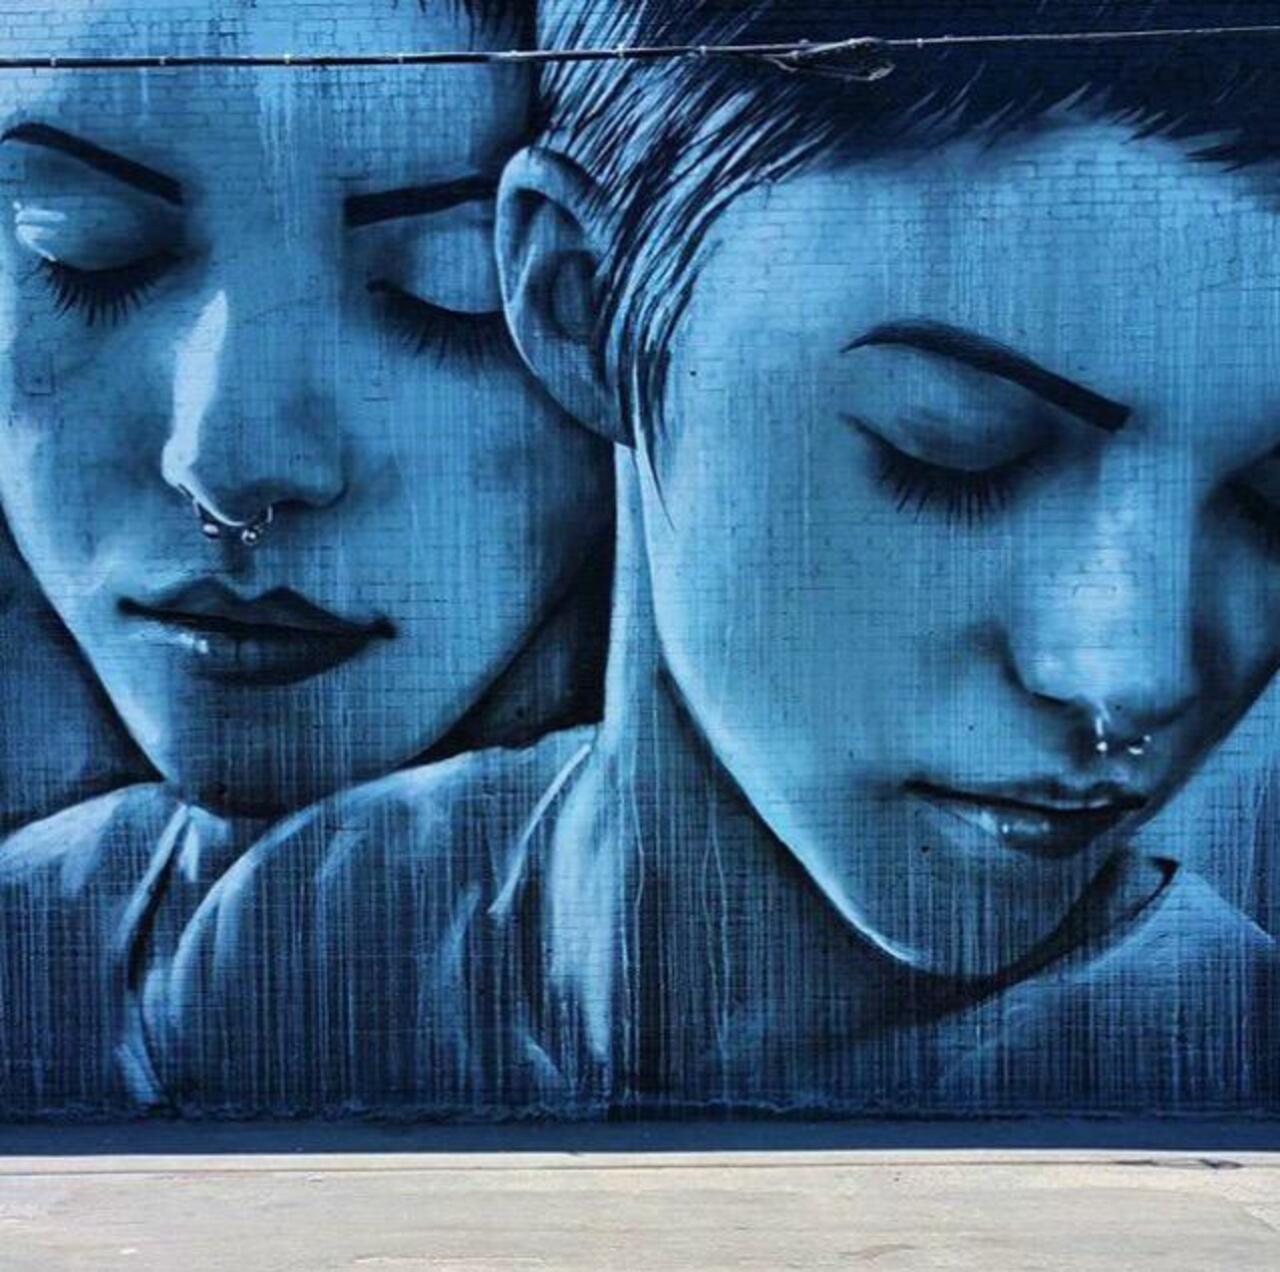 RT @artlife365: Street Art by Christina Angelina 

#art #graffiti #mural #streetart http://t.co/jvUSx2ddG8